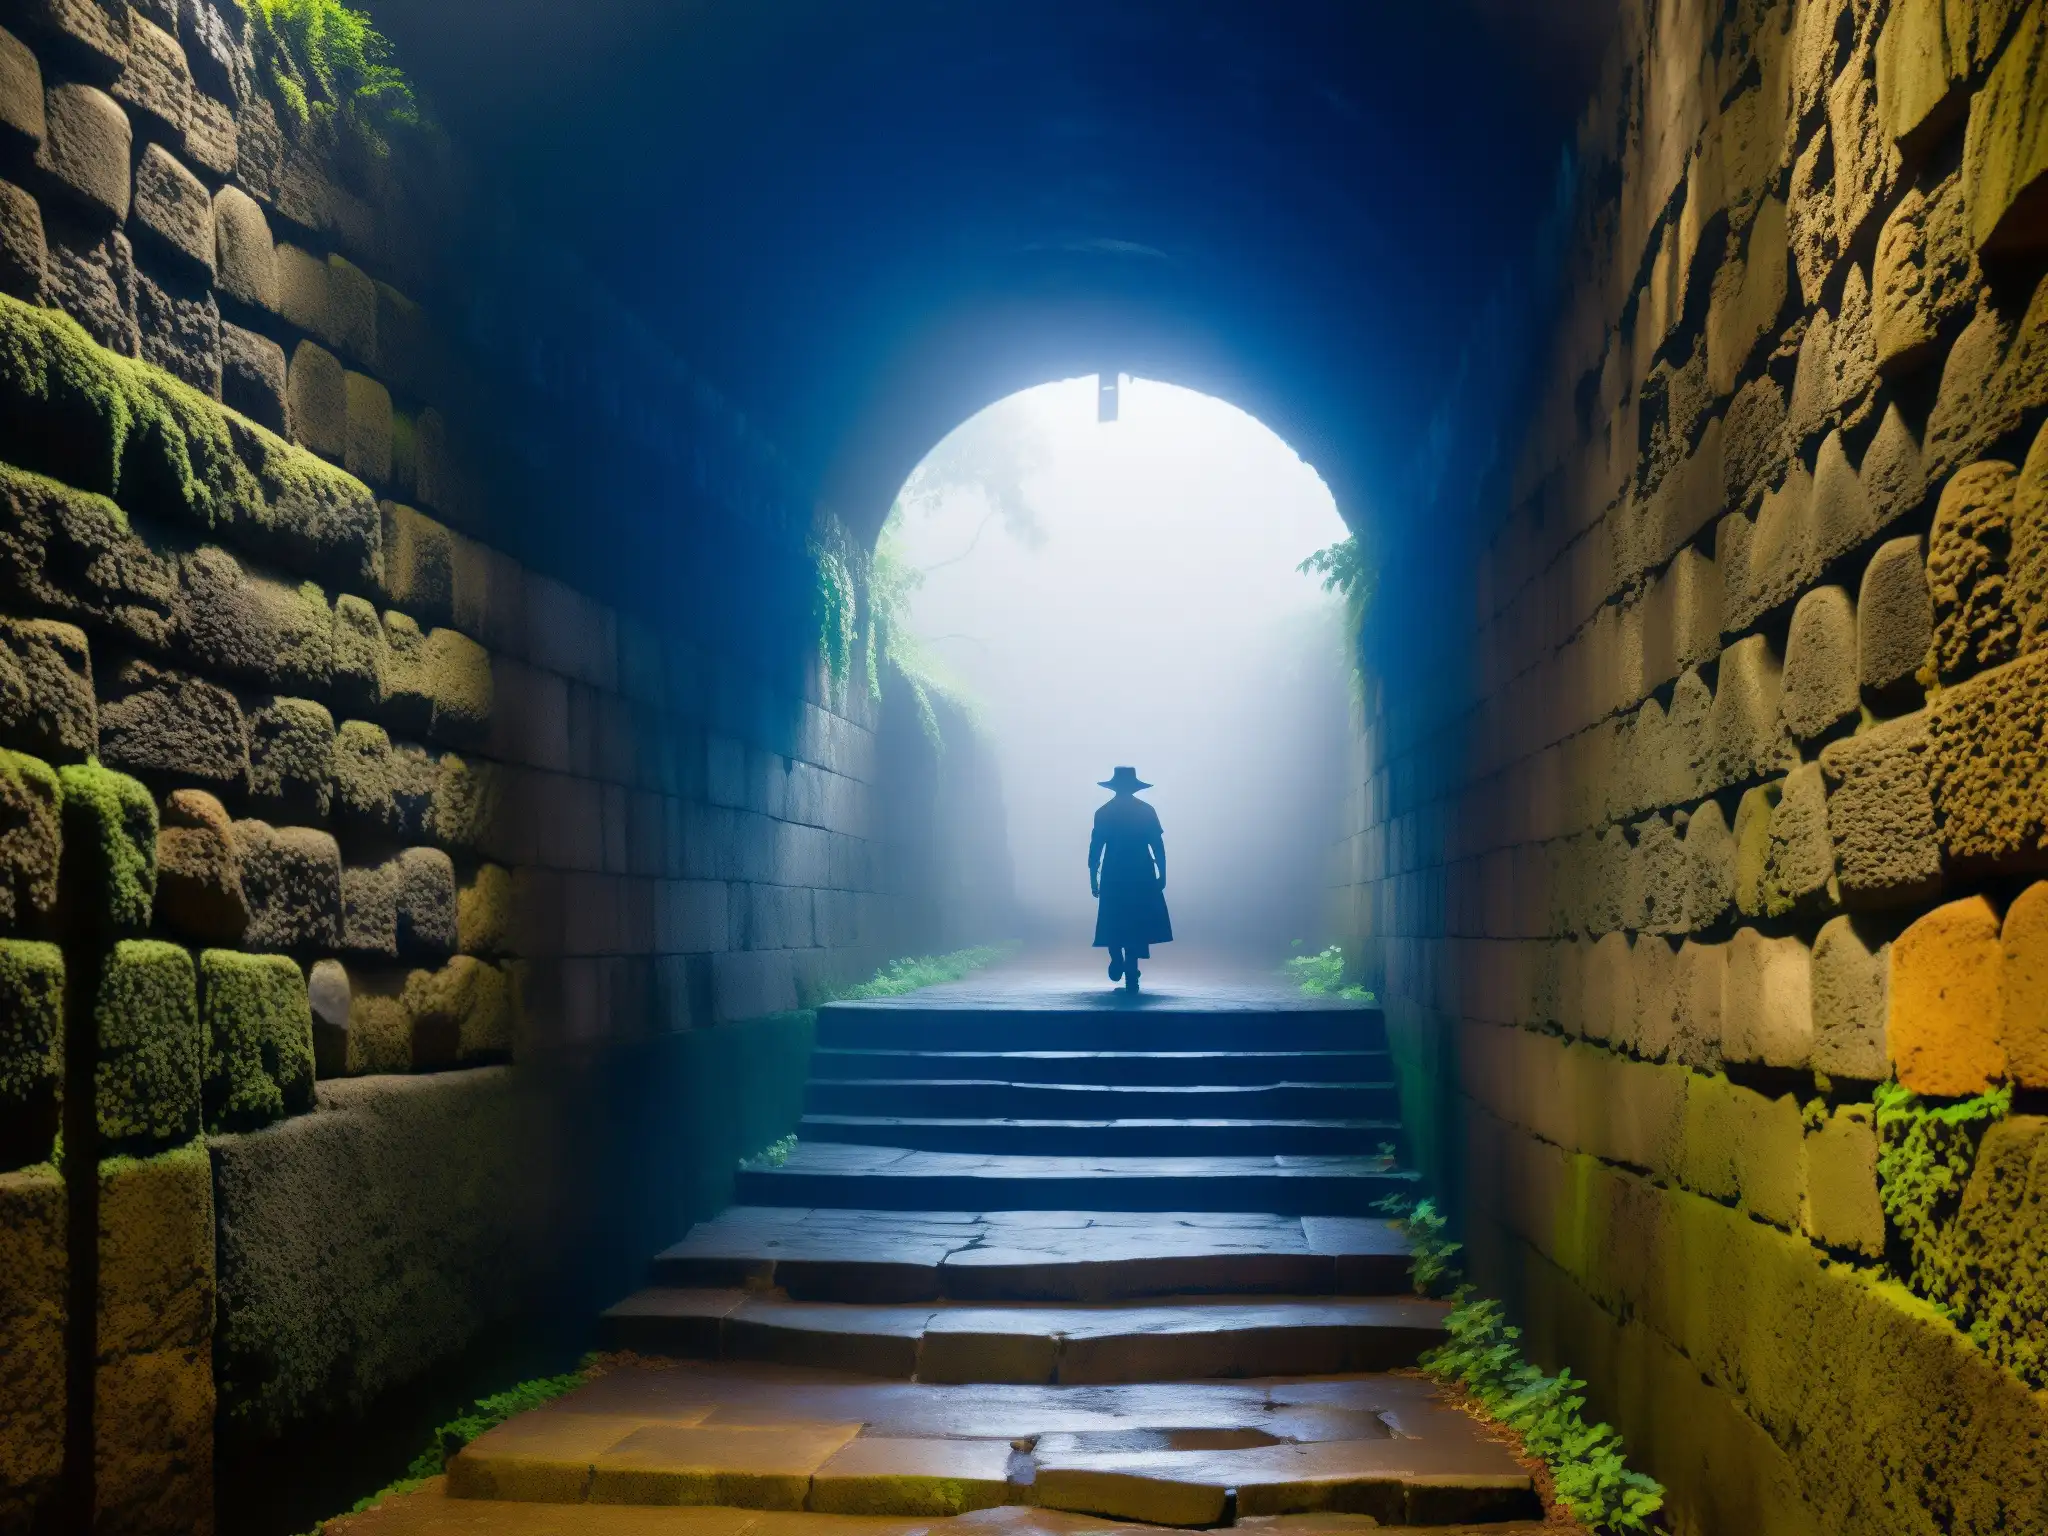 Entrada al misterioso Tunel de la Llorona en Celaya, México, envuelto en niebla con iluminación dramática y detalles históricos destacados